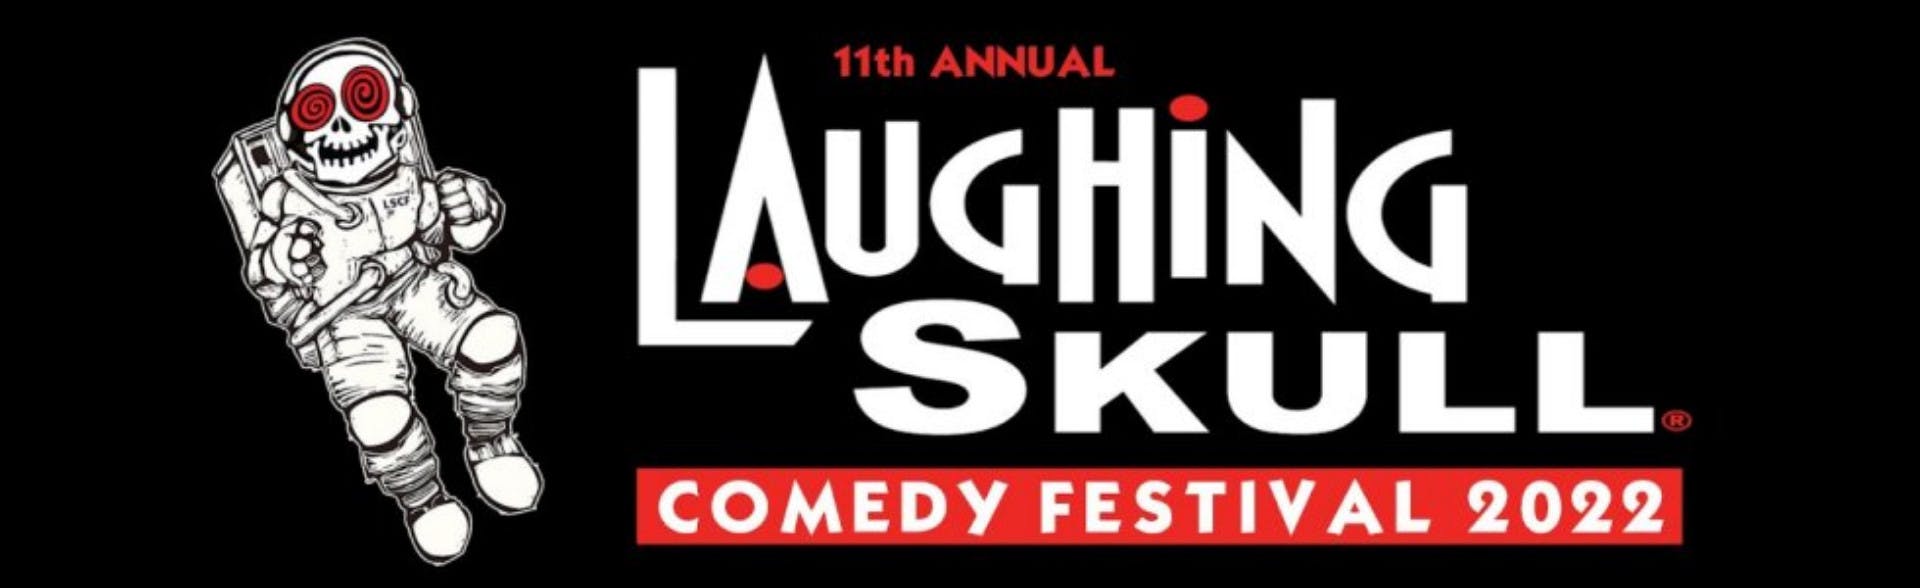 Laughing Skull Comedy Festival